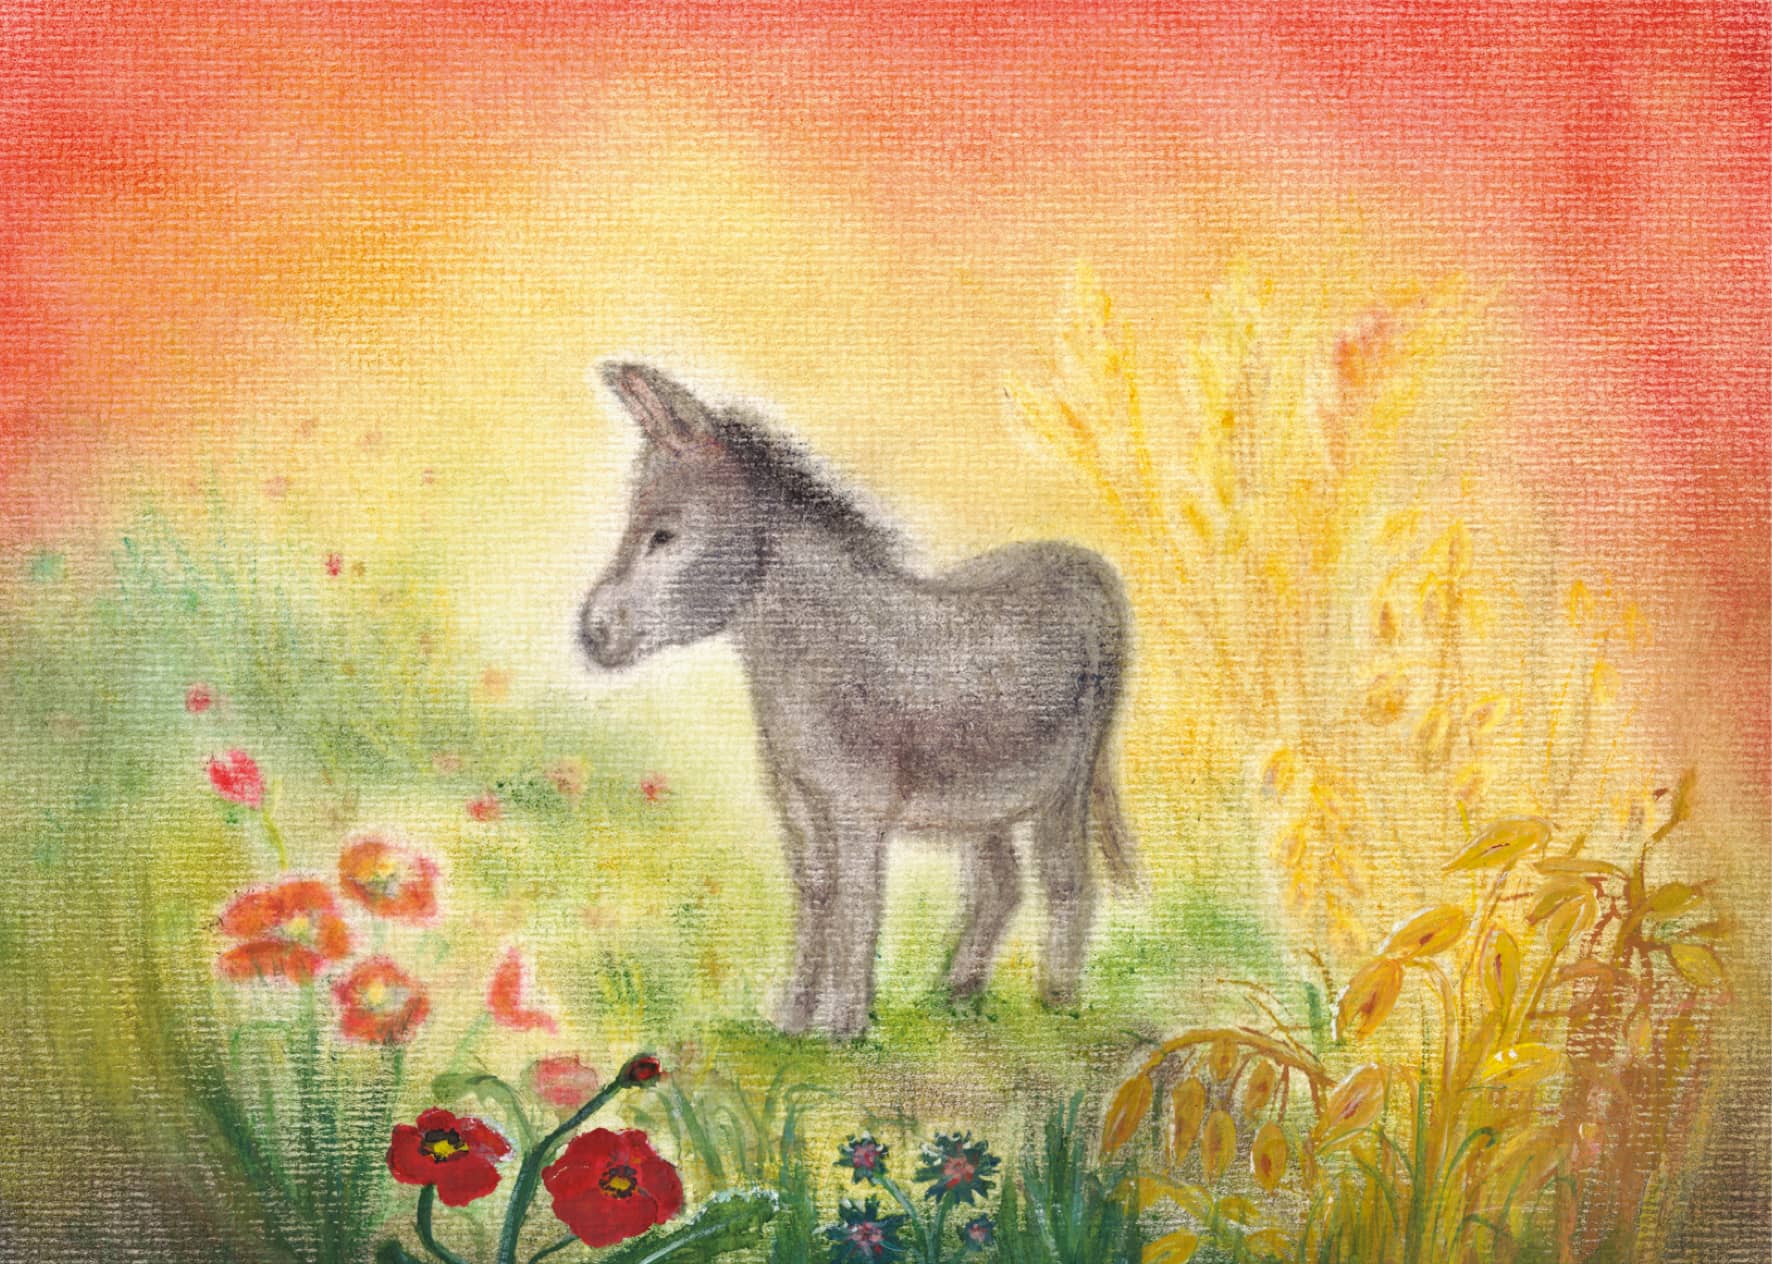 Seccorell-Postkarte "Esel" zeigt ein friedvolles Bild eines Esels in einer bunten Wiesenlandschaft.